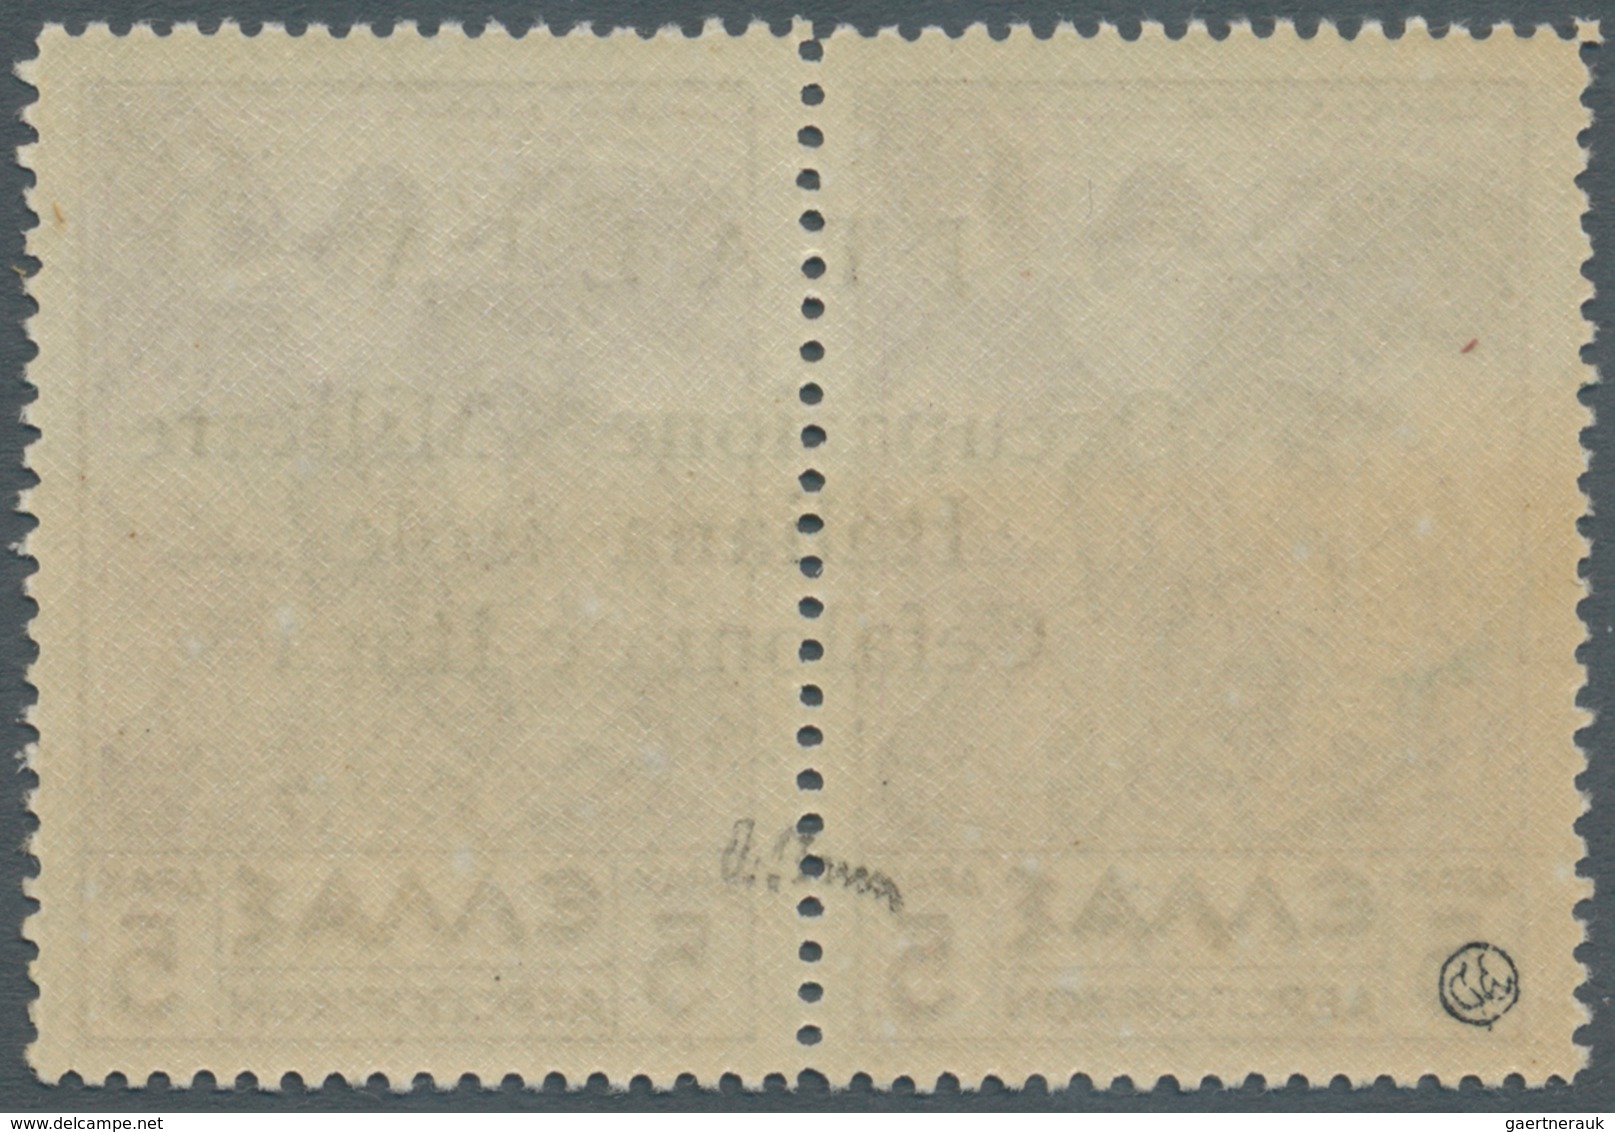 Ionische Inseln - Lokalausgaben: Kefalonia Und Ithaka: 1941, Argostoli Issue, Airmail Stamp 5dr. Vio - Isole Ioniche